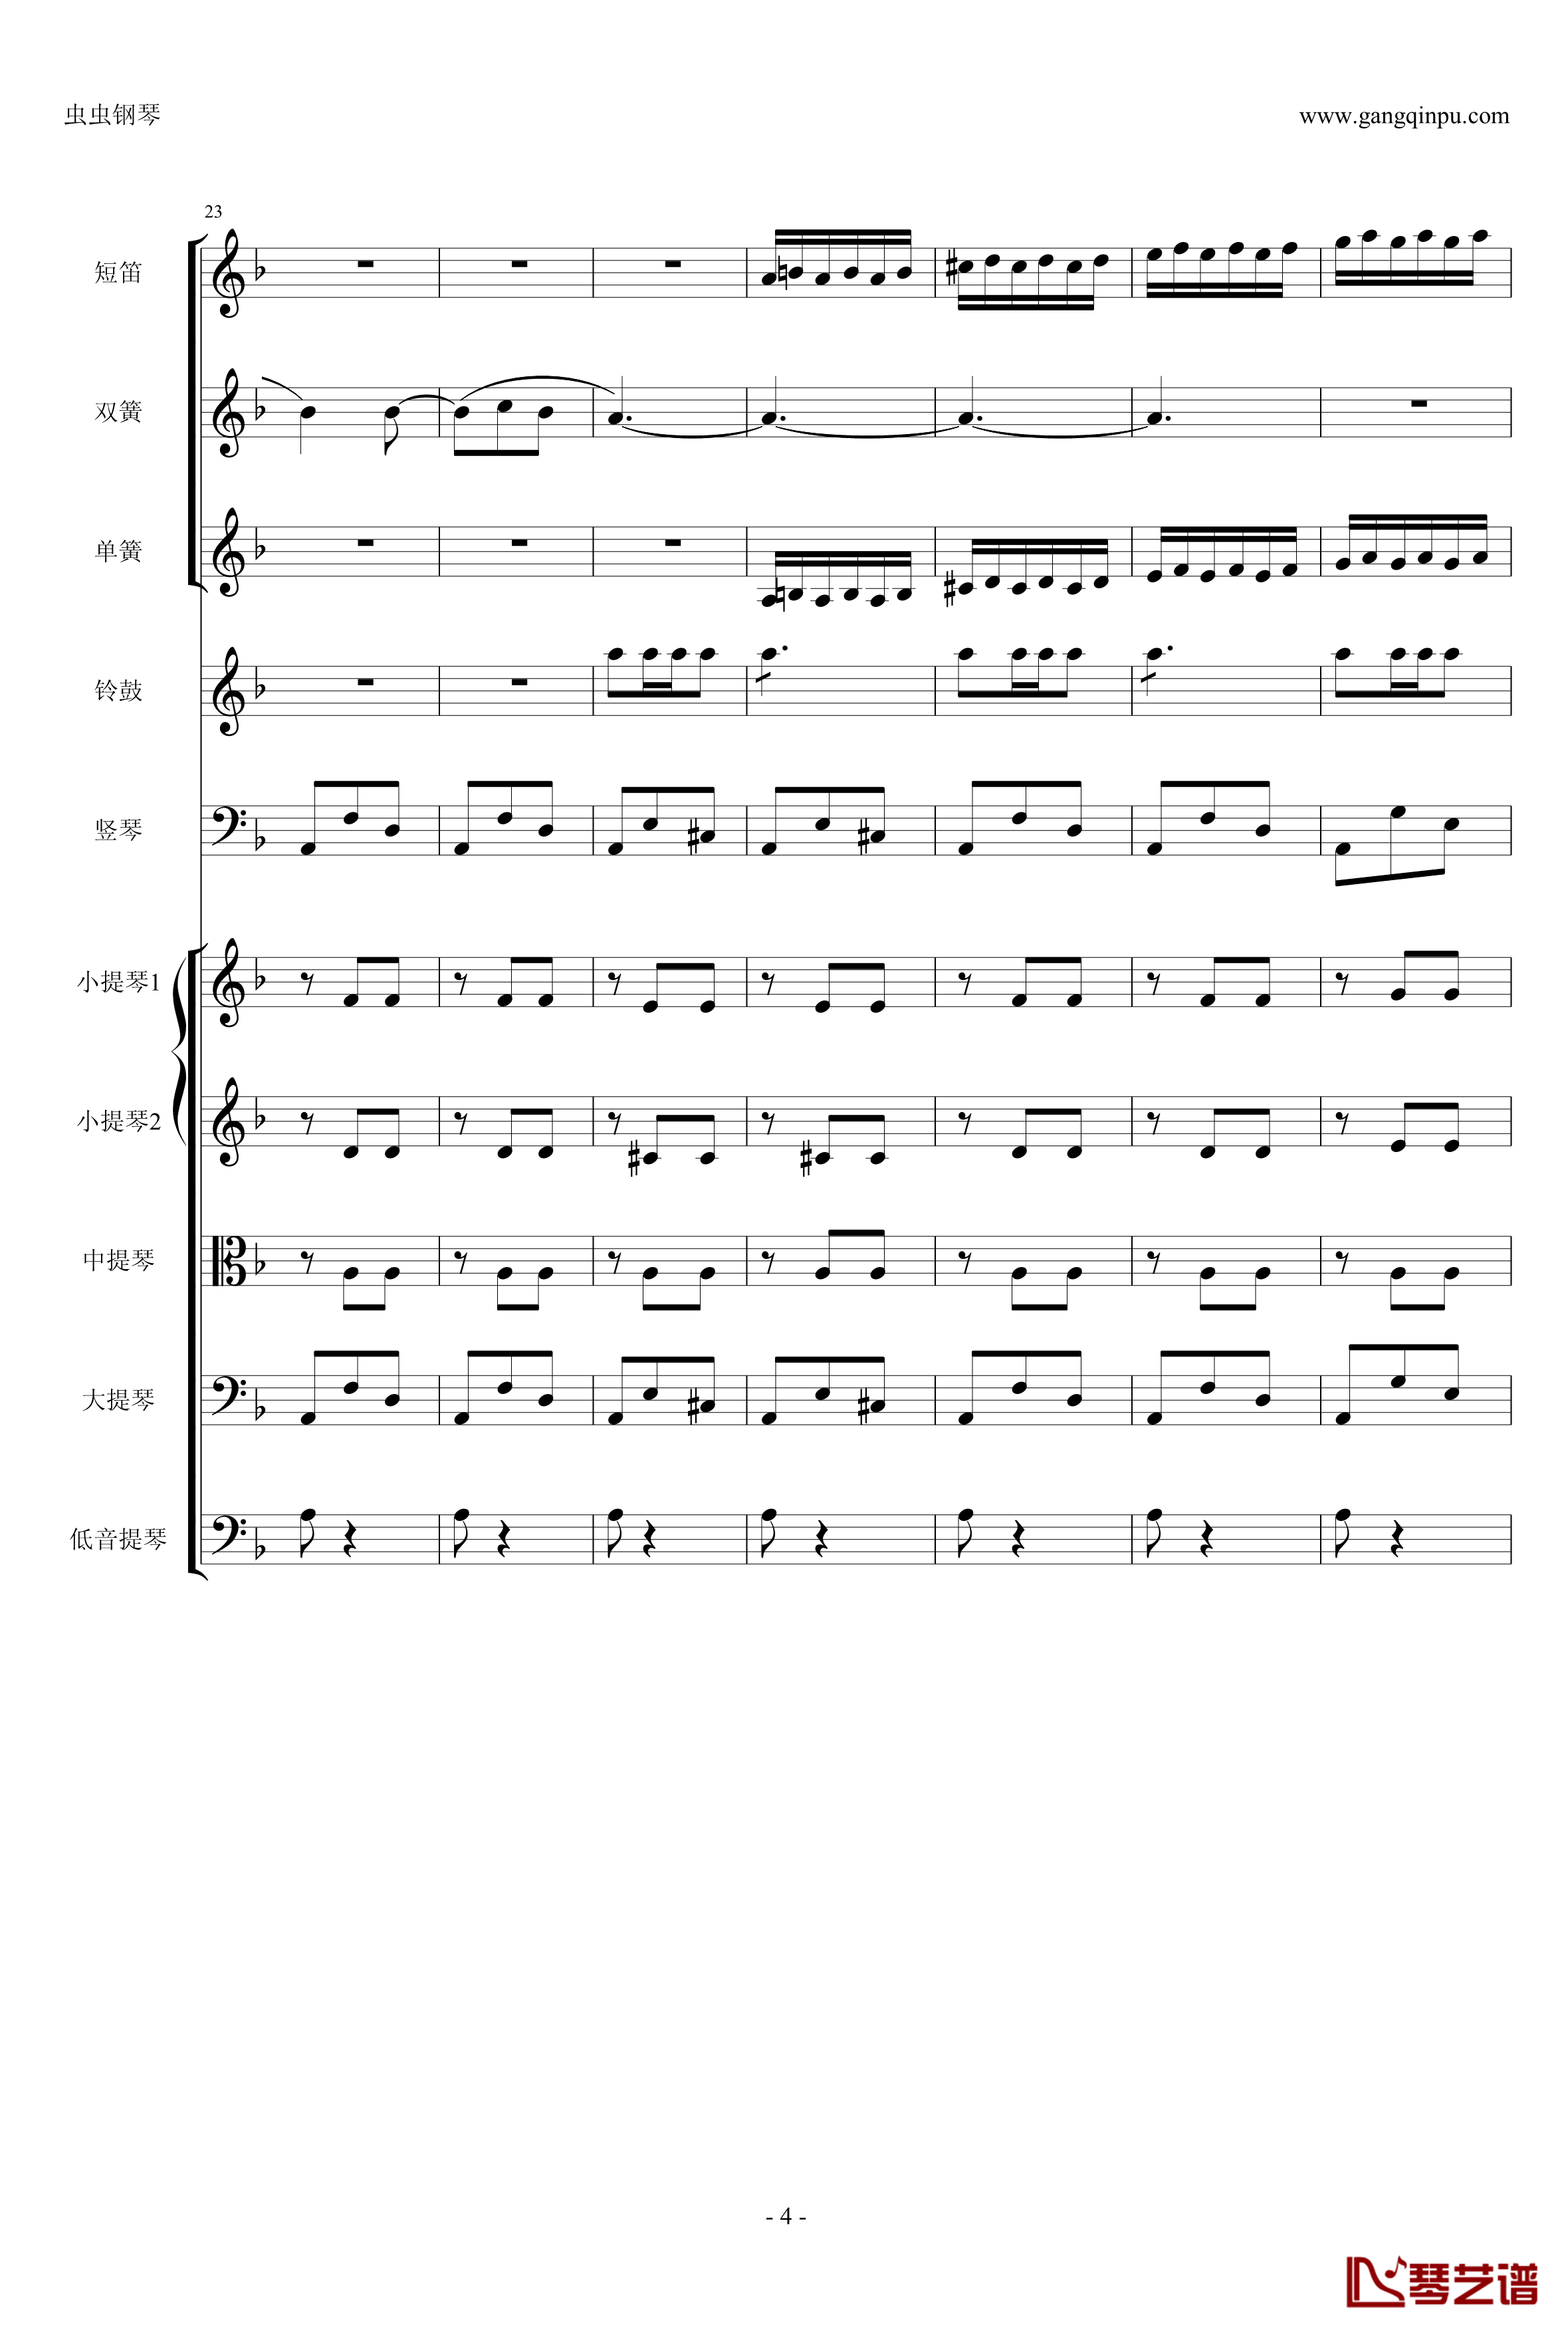 歌剧卡门选段钢琴谱-比才-Bizet- 第四幕间奏曲4